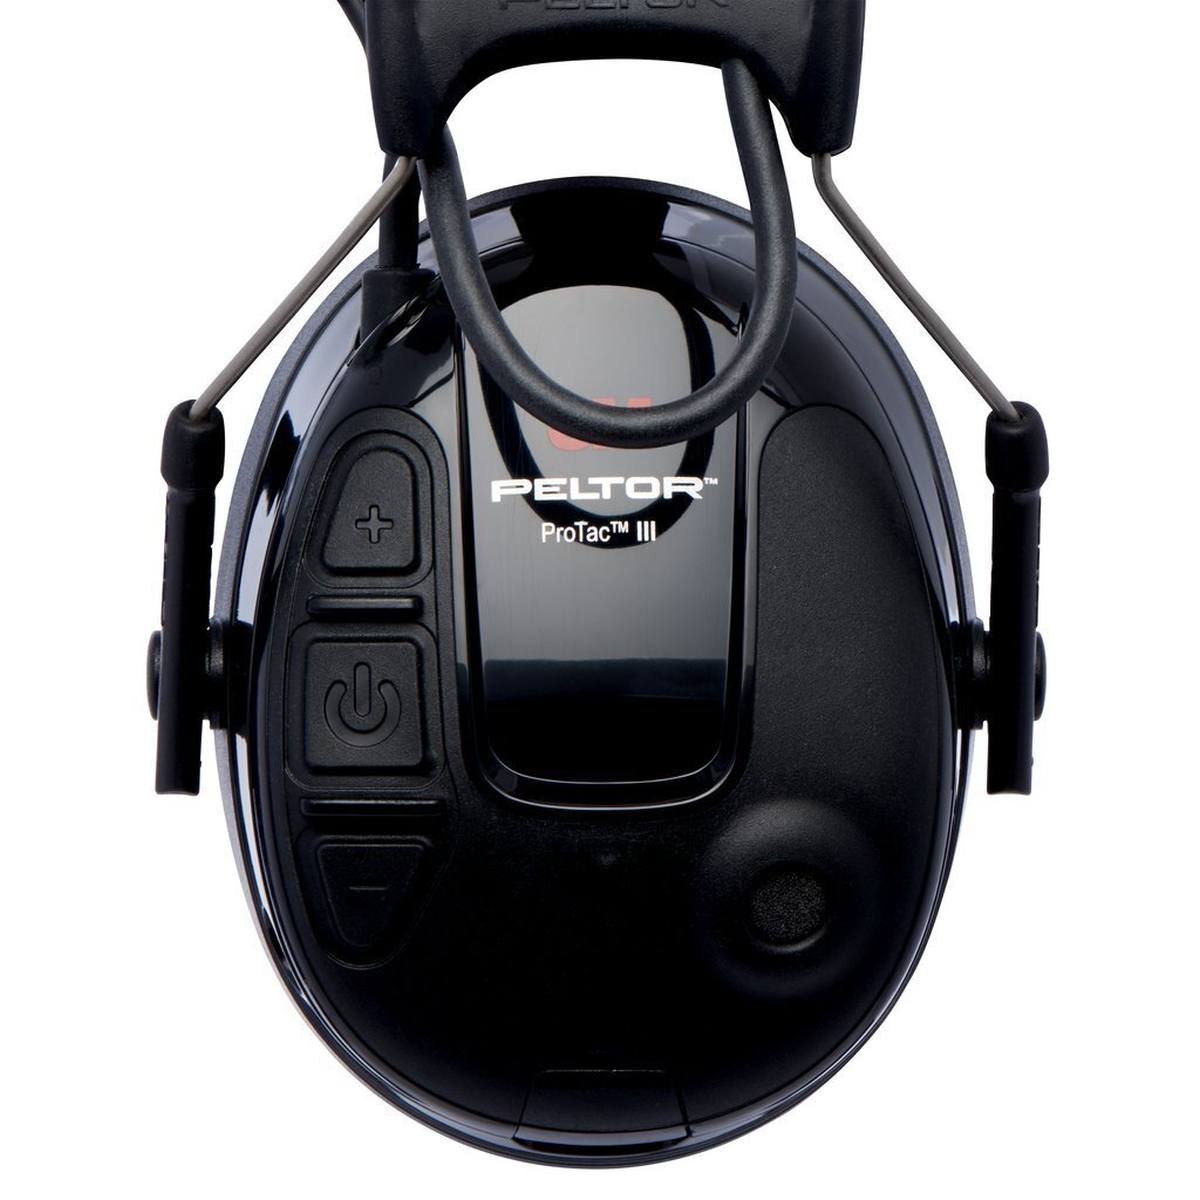 3M PELTOR ProTac III Slim gehoorbeschermende headset, zwart, hoofdband, met actieve, niveau-afhankelijke dempingstechnologie voor het waarnemen van omgevingsgeluid, SNR=26 dB, zwart